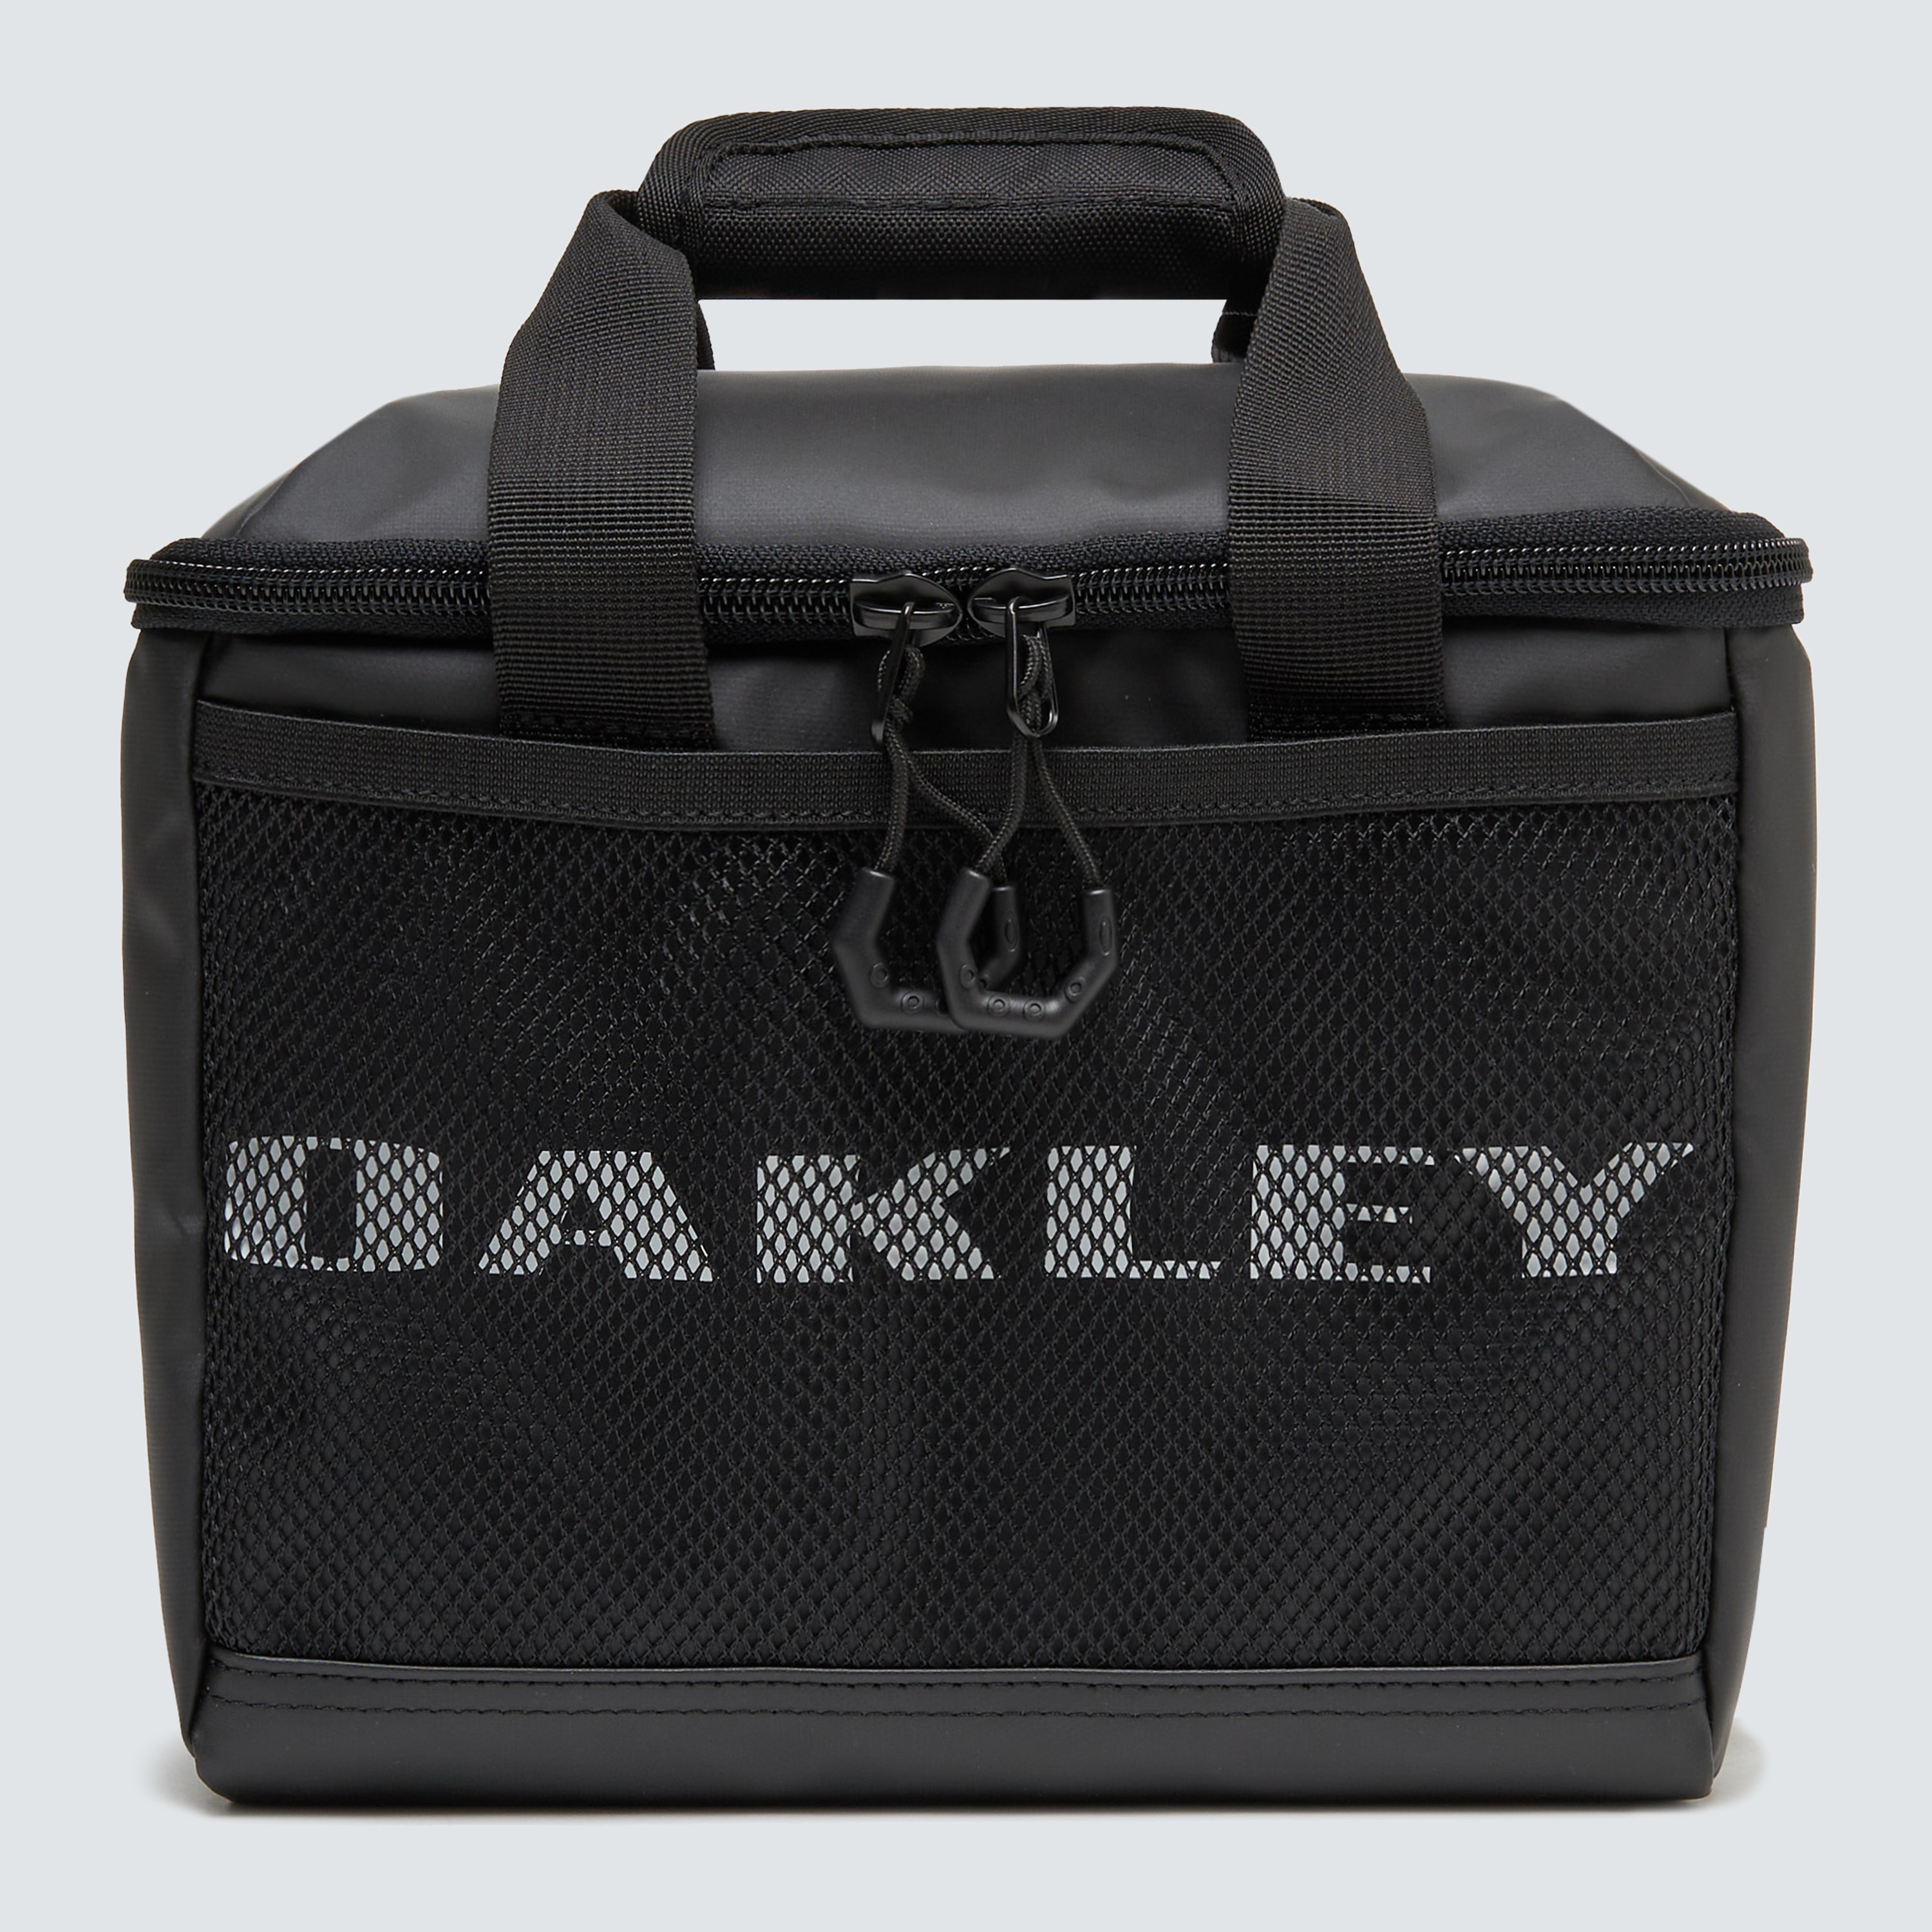 www.oakley.com